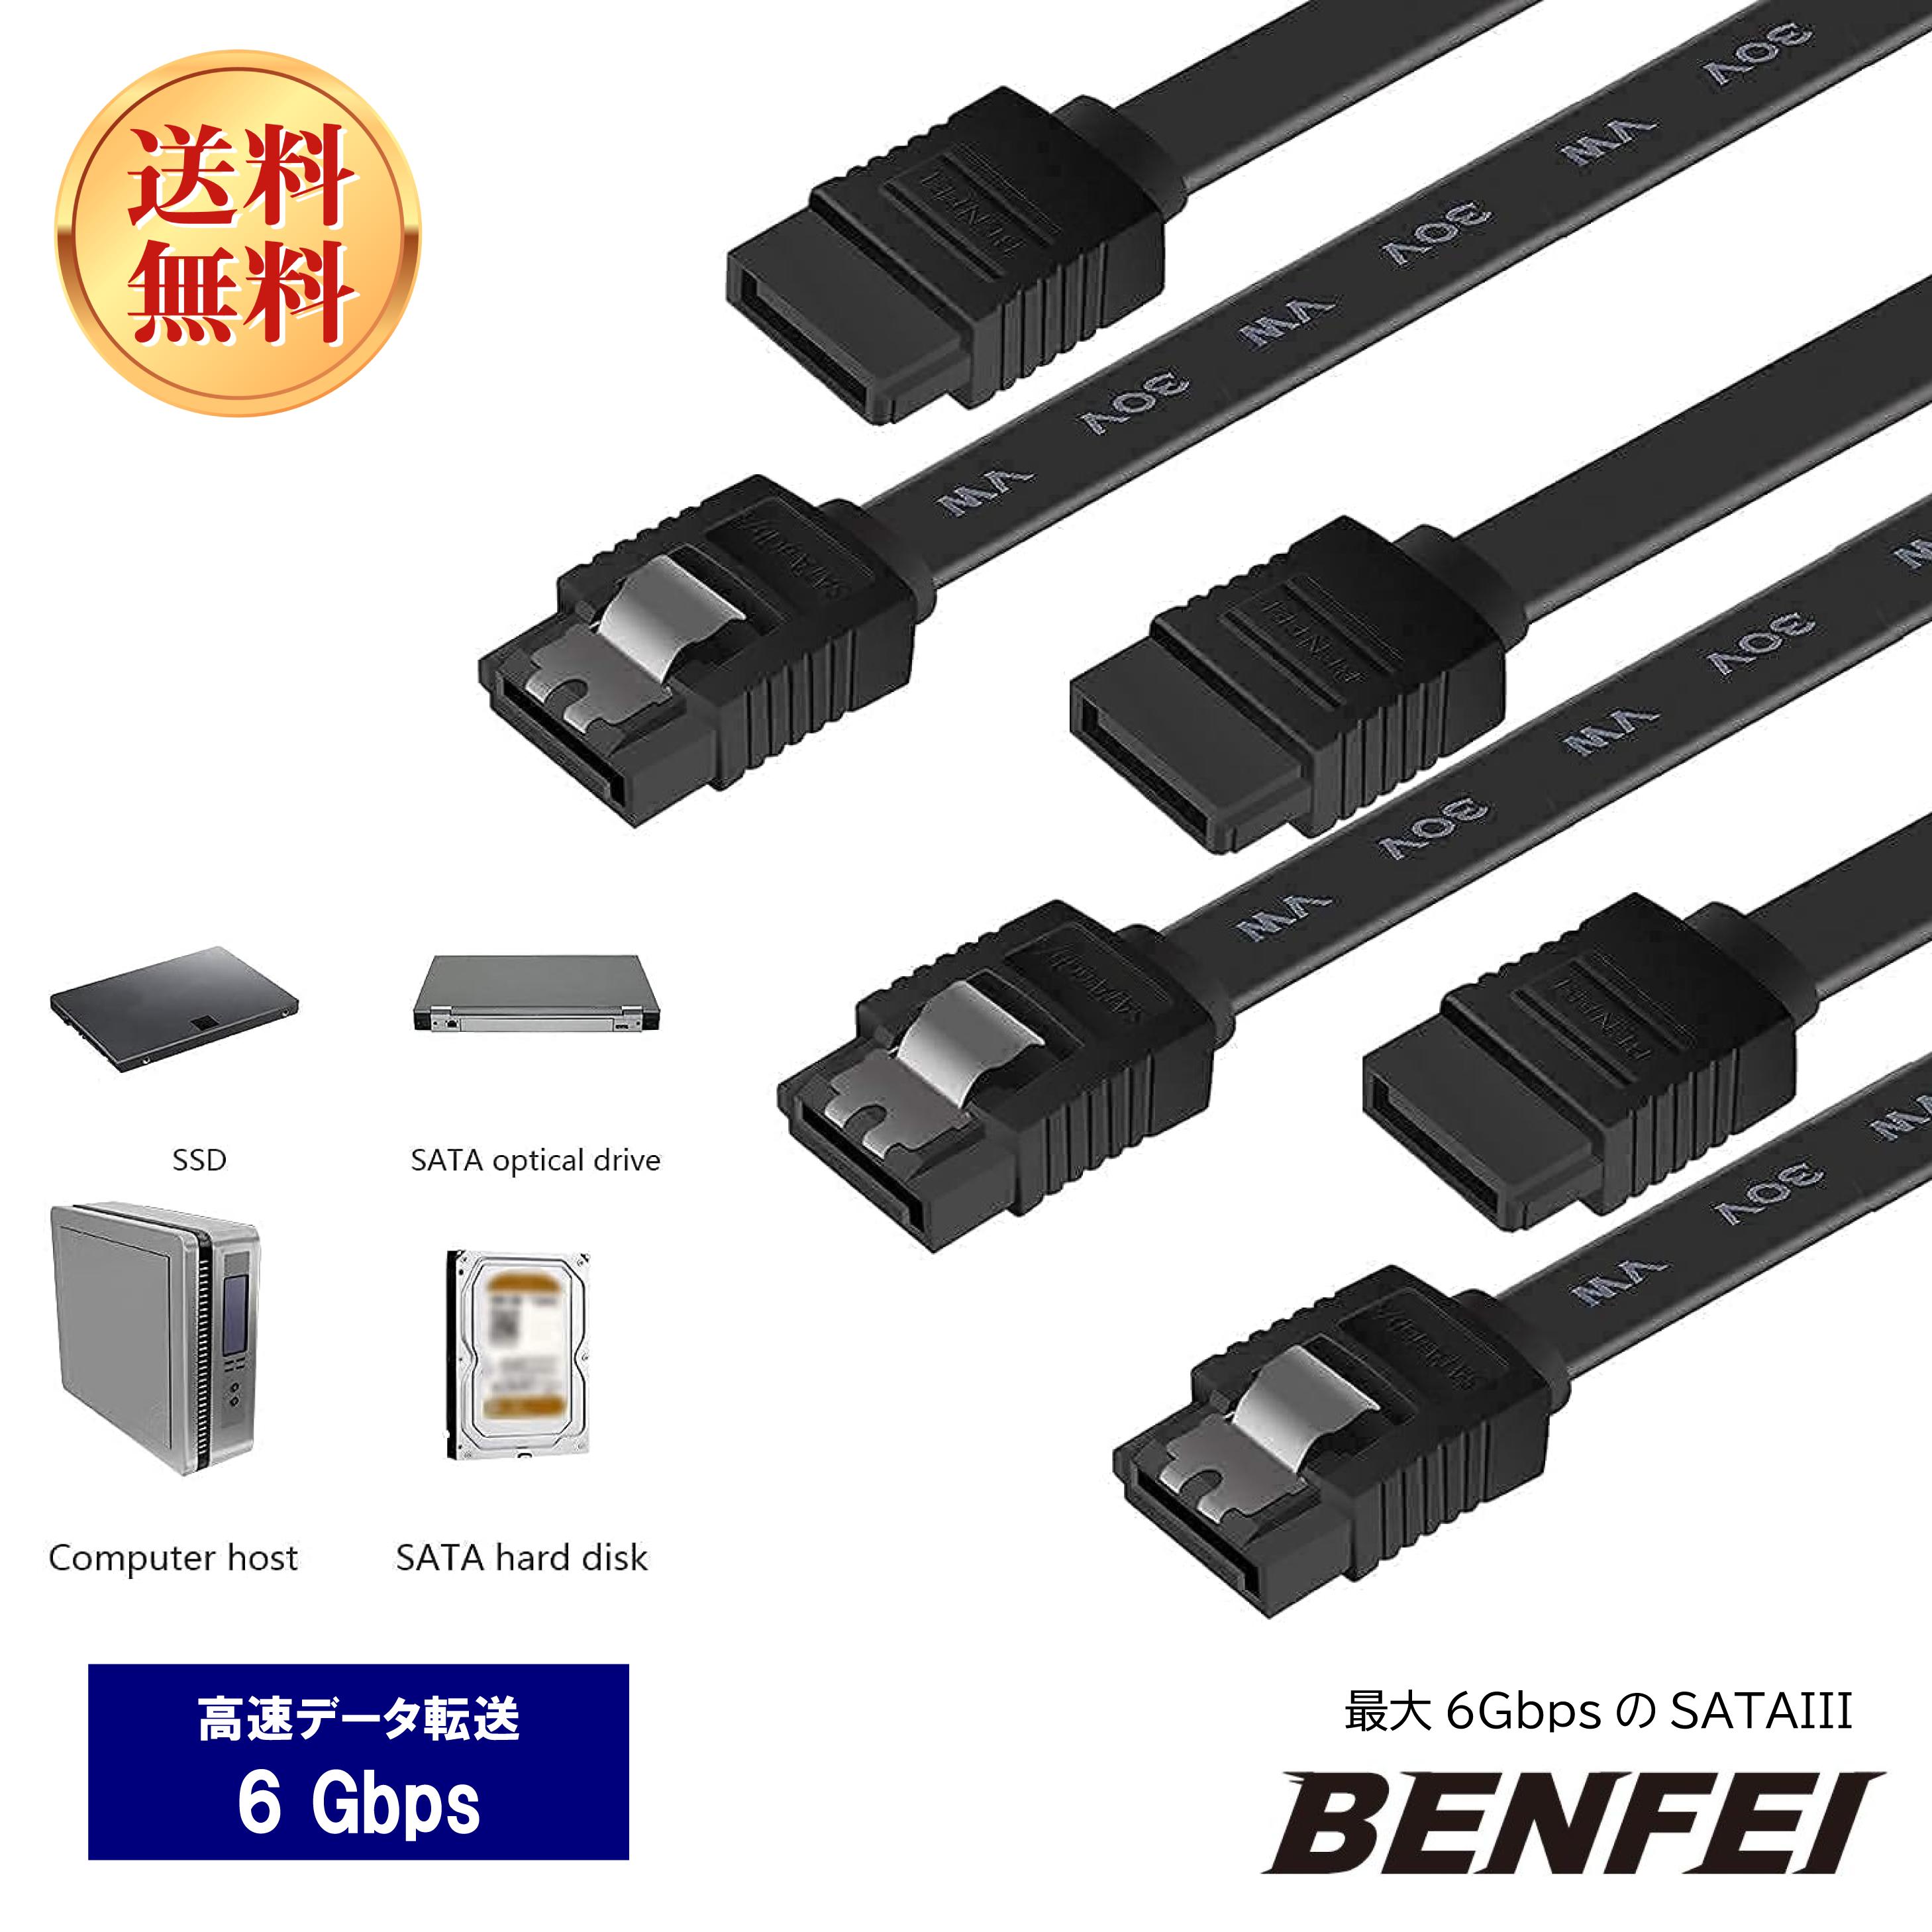 BENFEI SATAケーブル (ストレート型) 45cm 3本セット SATA3 6Gbps 対応 ラッチ付き SSDとHDD増設-ブラック